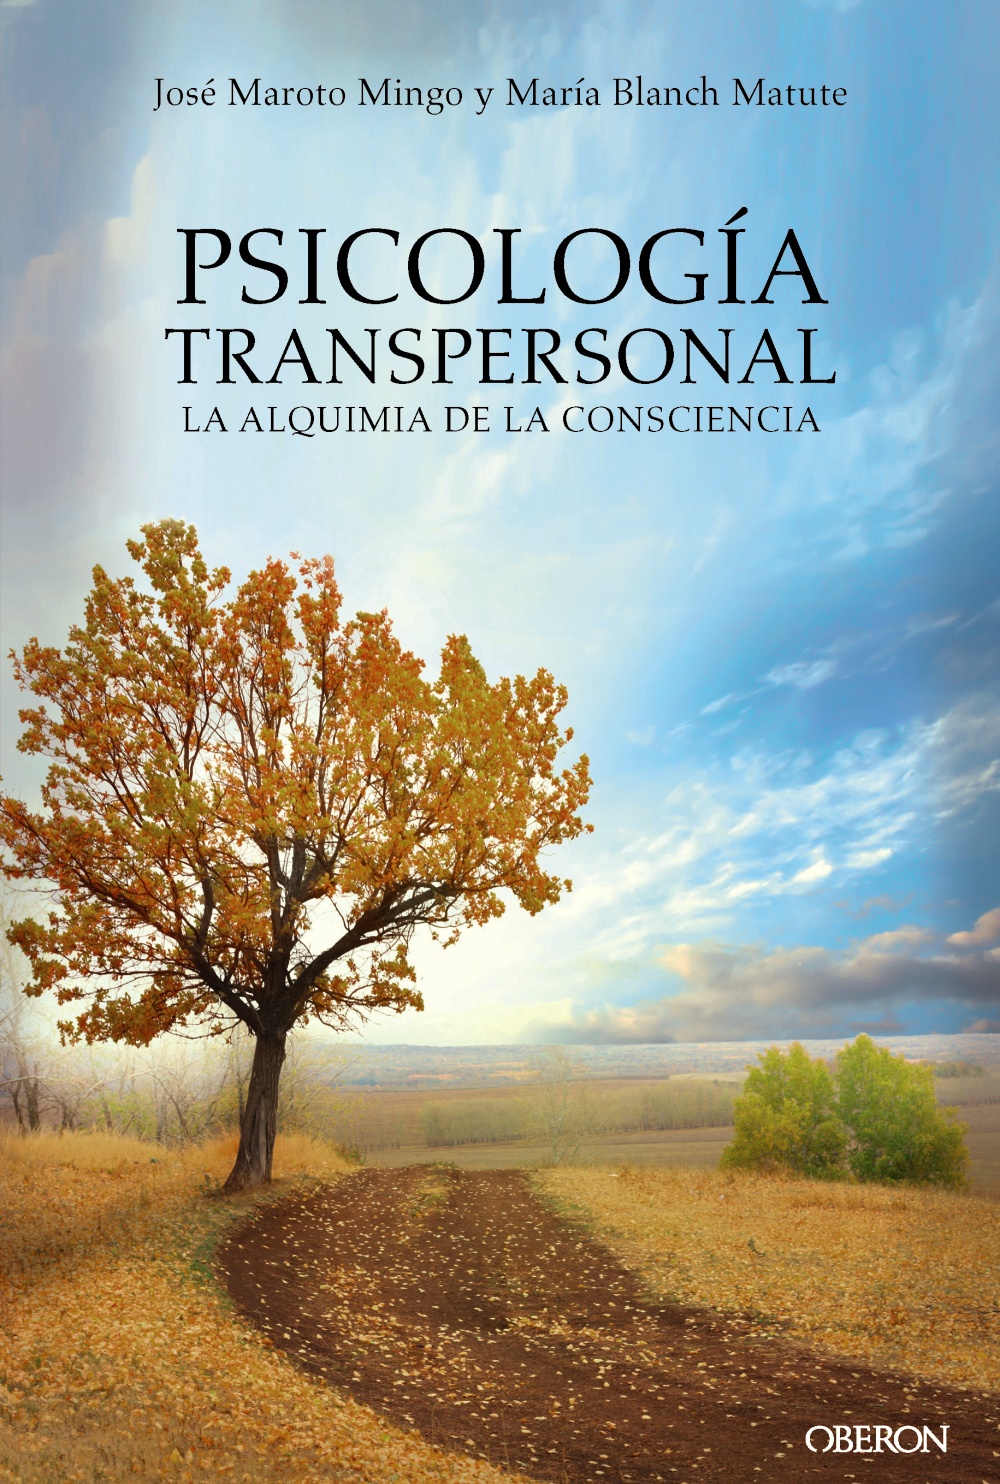 Psicología transpersonal "La alquimia de la consciencia"